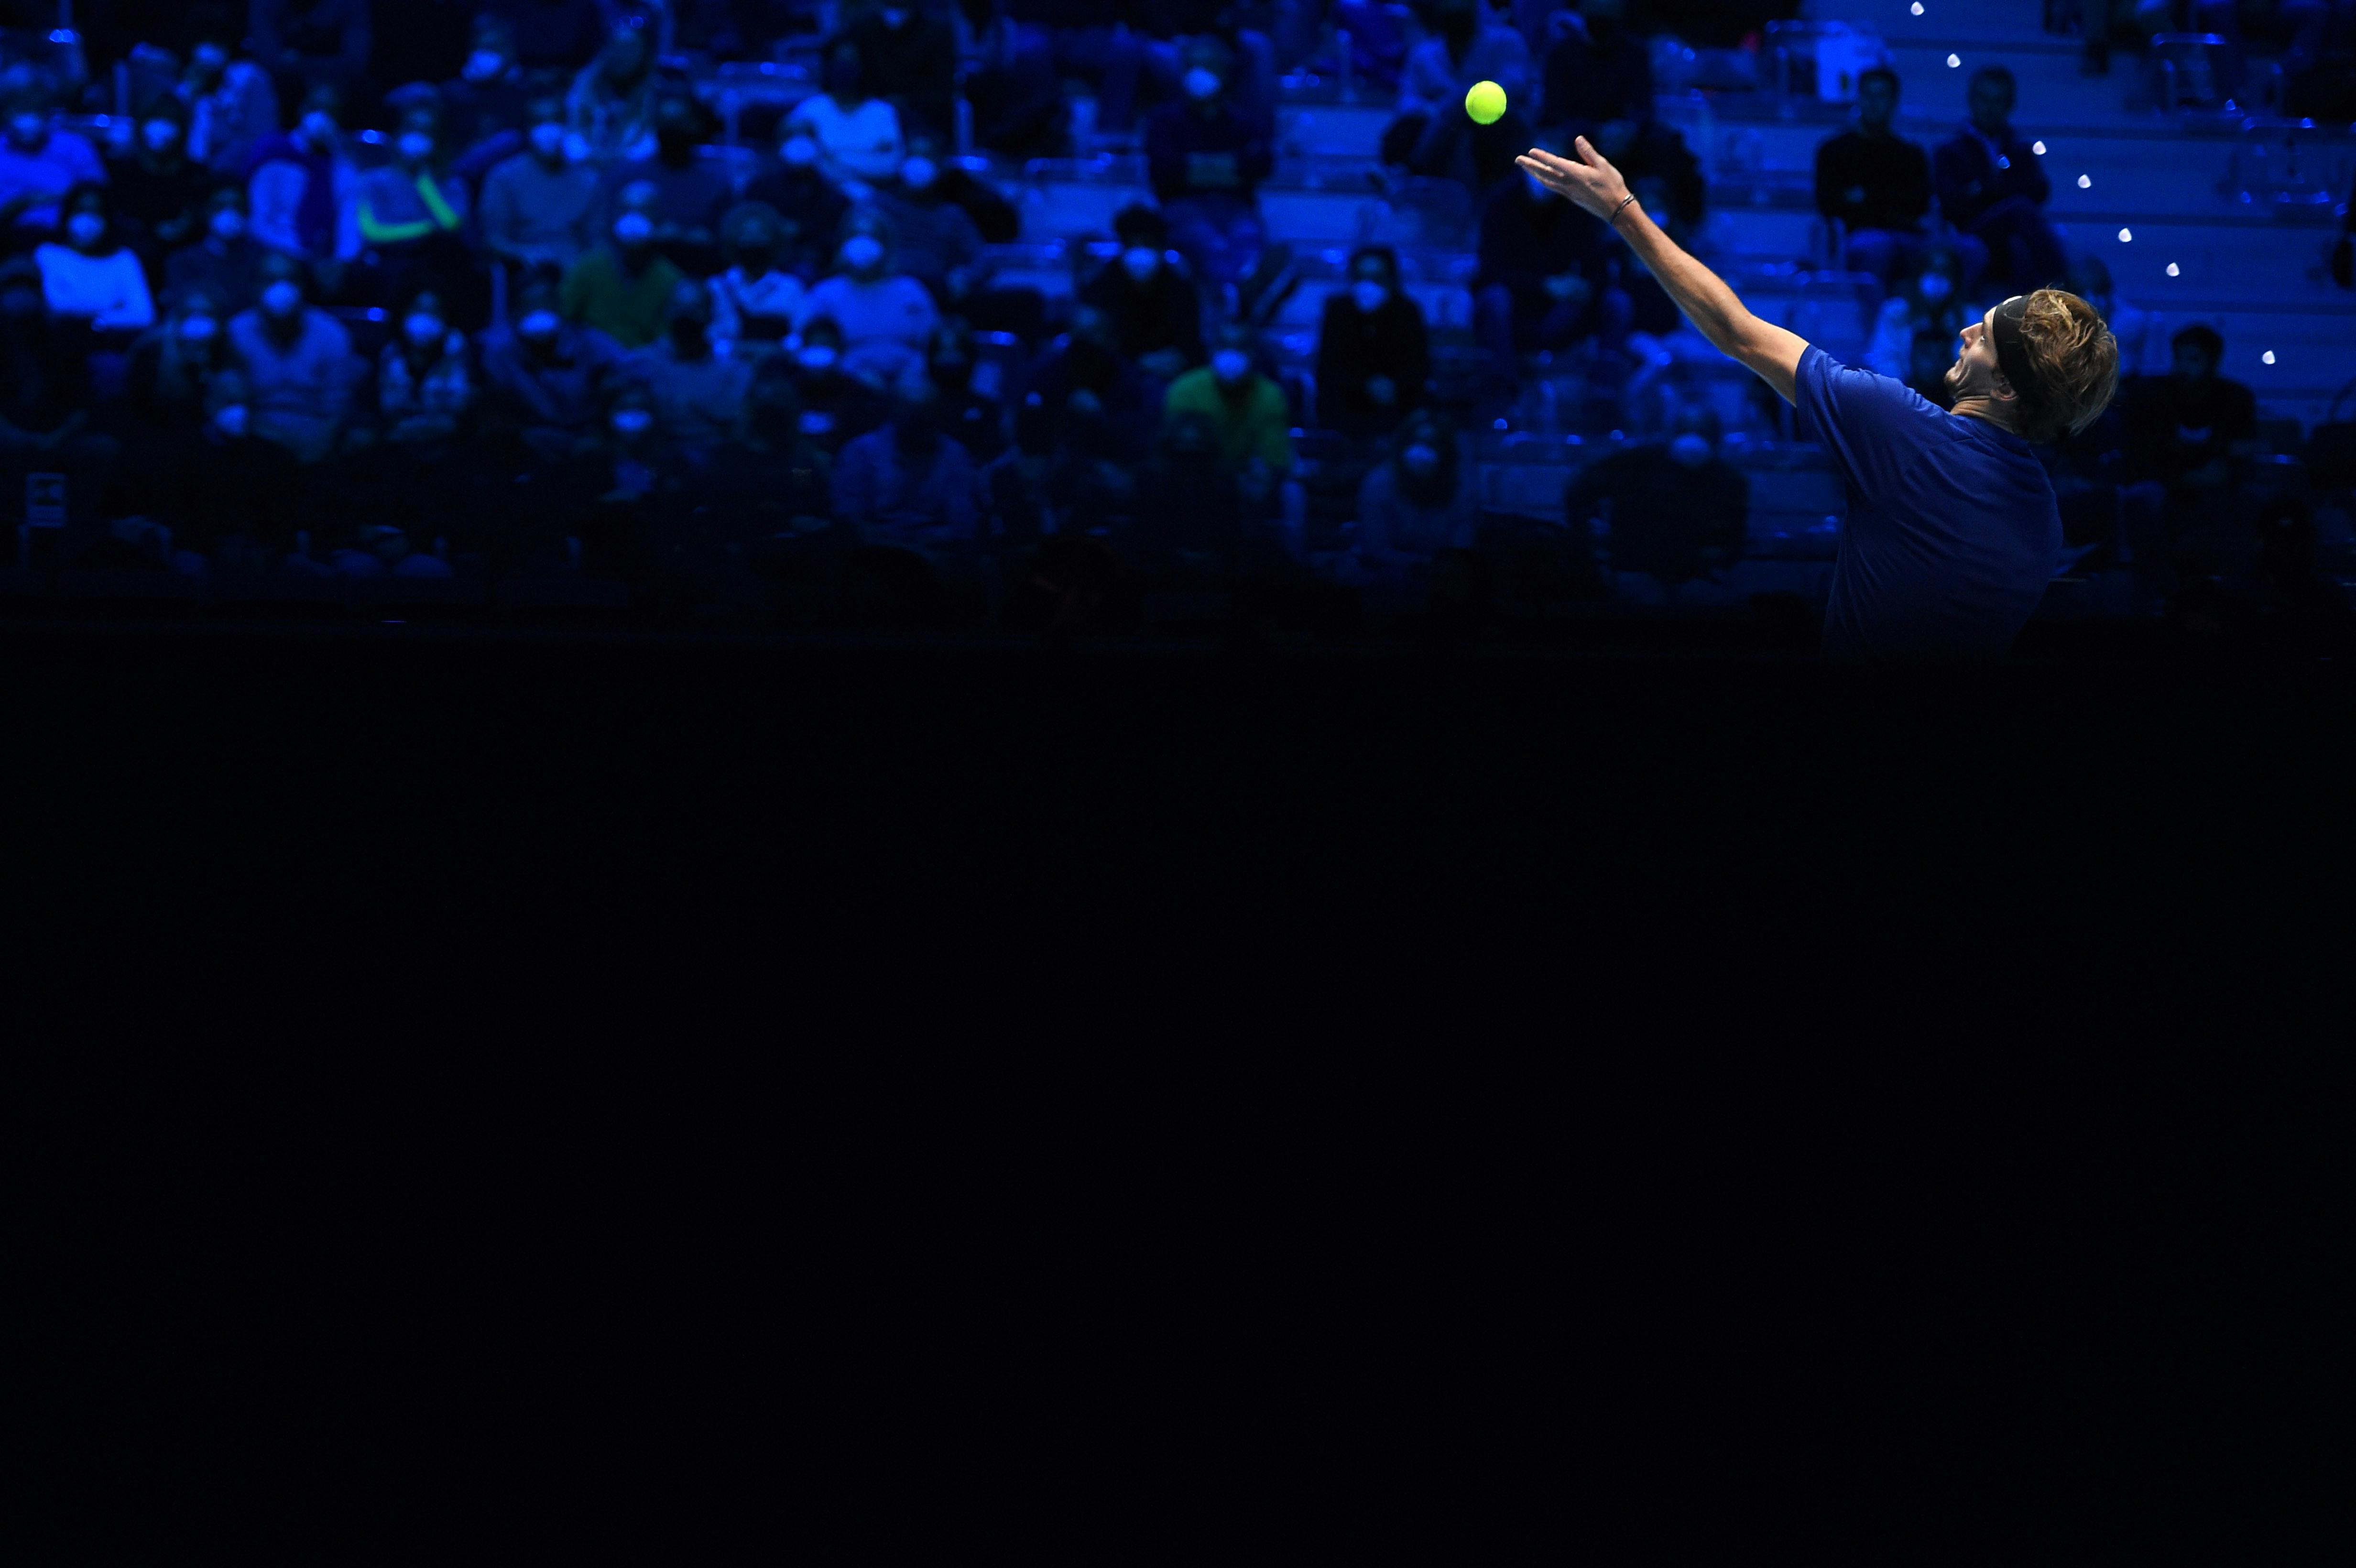 Alexander Zverev serving between light and shadow ATP Finals 2021